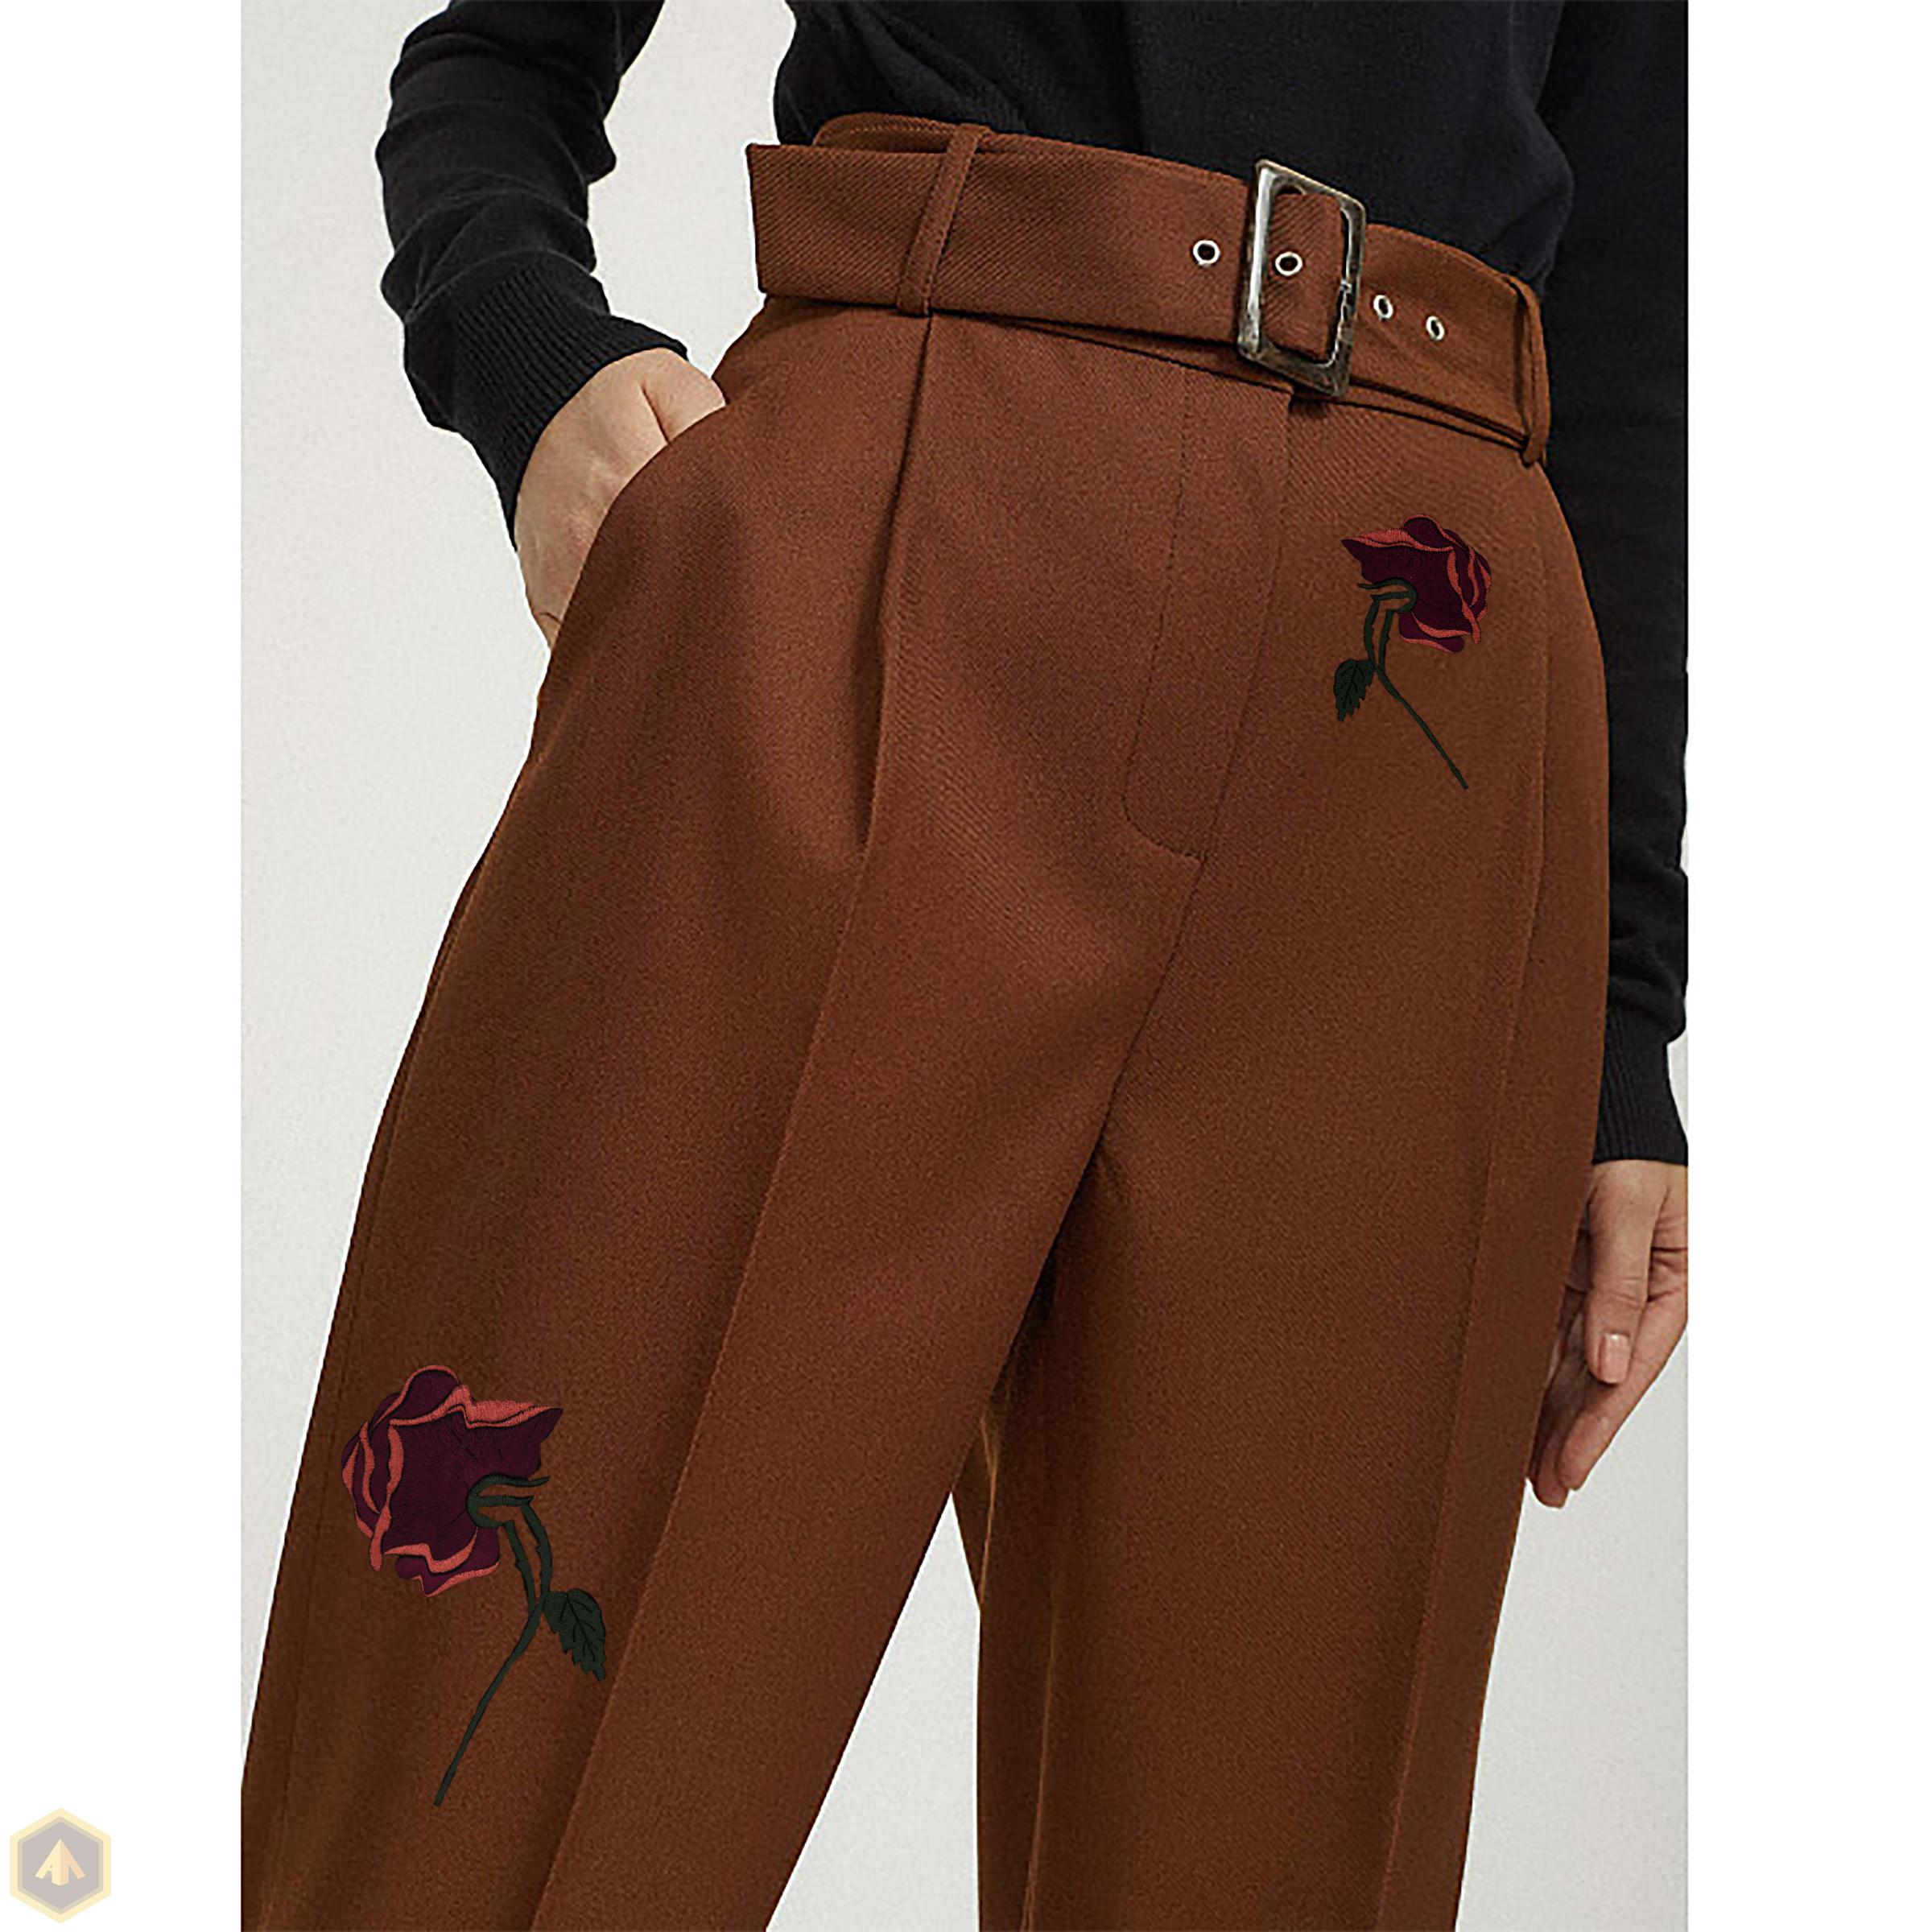 6.брюки коричневые с розами